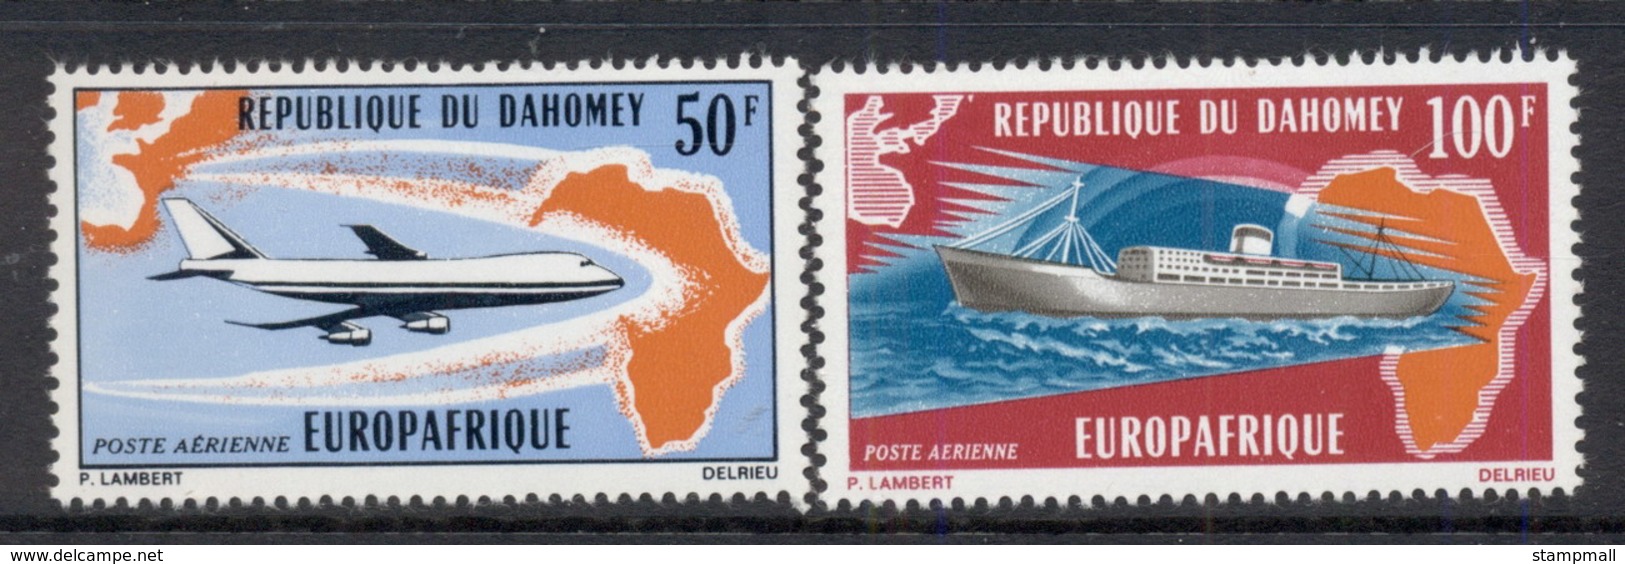 Dahomey 1971 Europafrica MUH - Benin - Dahomey (1960-...)